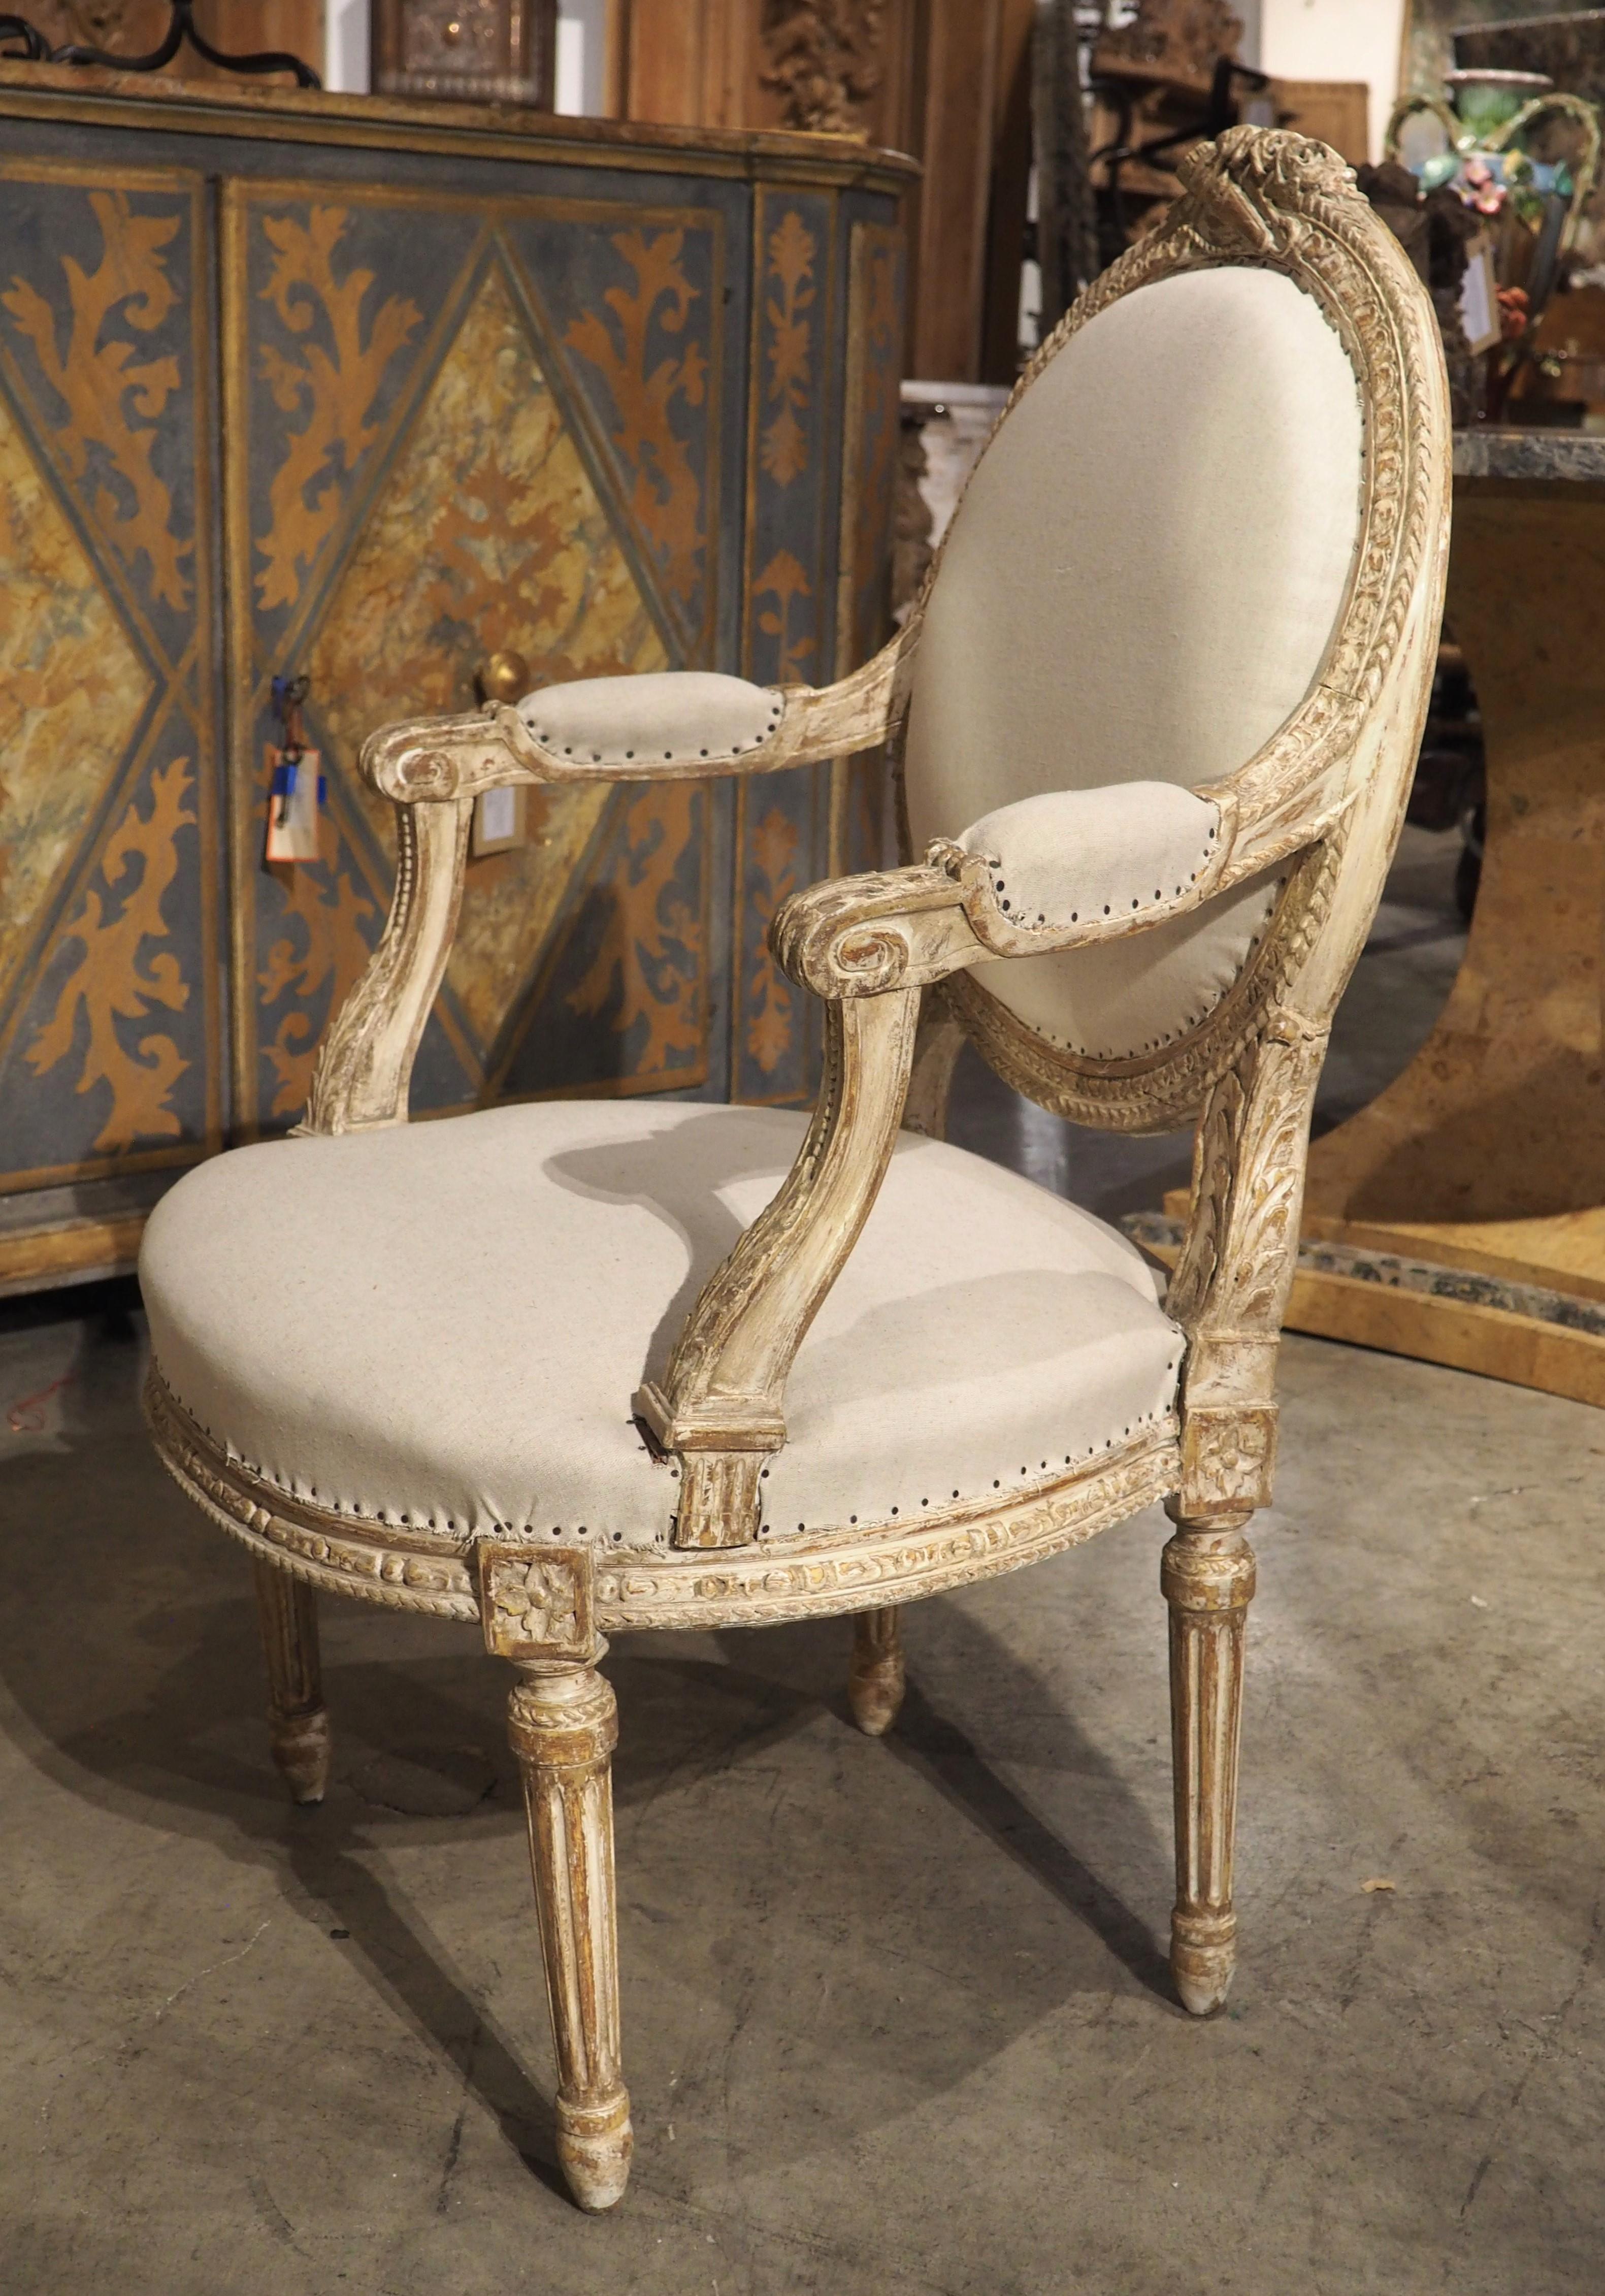 CIRCA 1885: Vier handgeschnitzte Cabrio-Sessel im Stil von Ludwig XVI. Die dicken ovalen Medaillonrückseiten (die ihre ursprüngliche karierte Leinwand auf der Rückseite behalten haben) wurden mit einer Trophäe im Scheitelbereich verziert, die einen